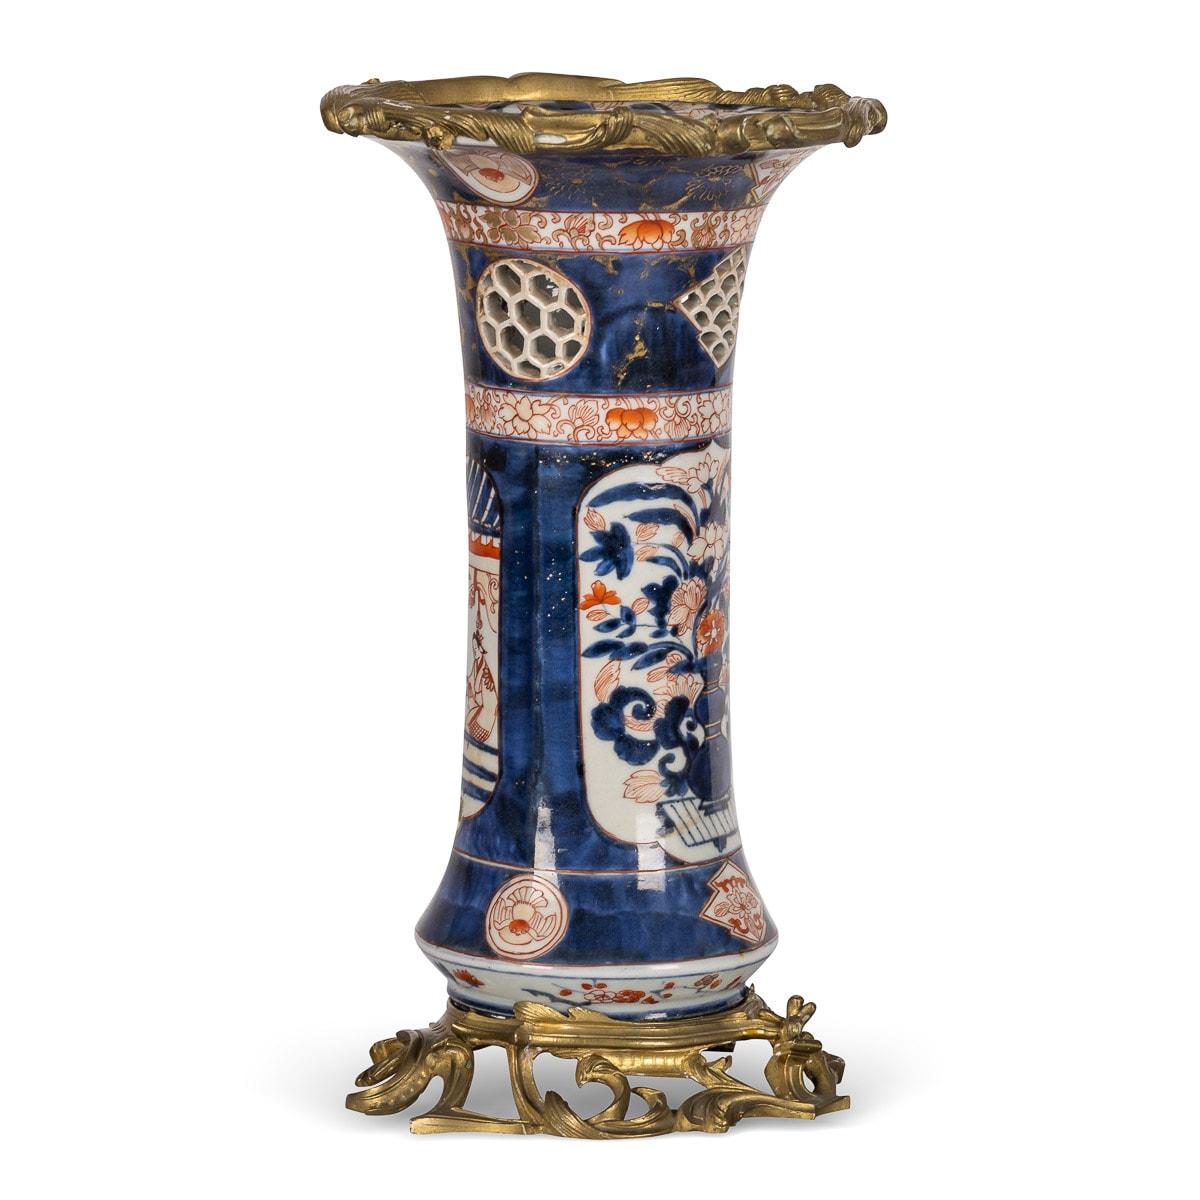 Vase ancien de la fin du 19ème siècle en porcelaine française de style Imari monté sur bronze doré. Le corps cylindrique est doté d'un rebord en bronze doré orné de fleurs et de rinceaux et repose sur une base volutée en bronze doré. Le vase est